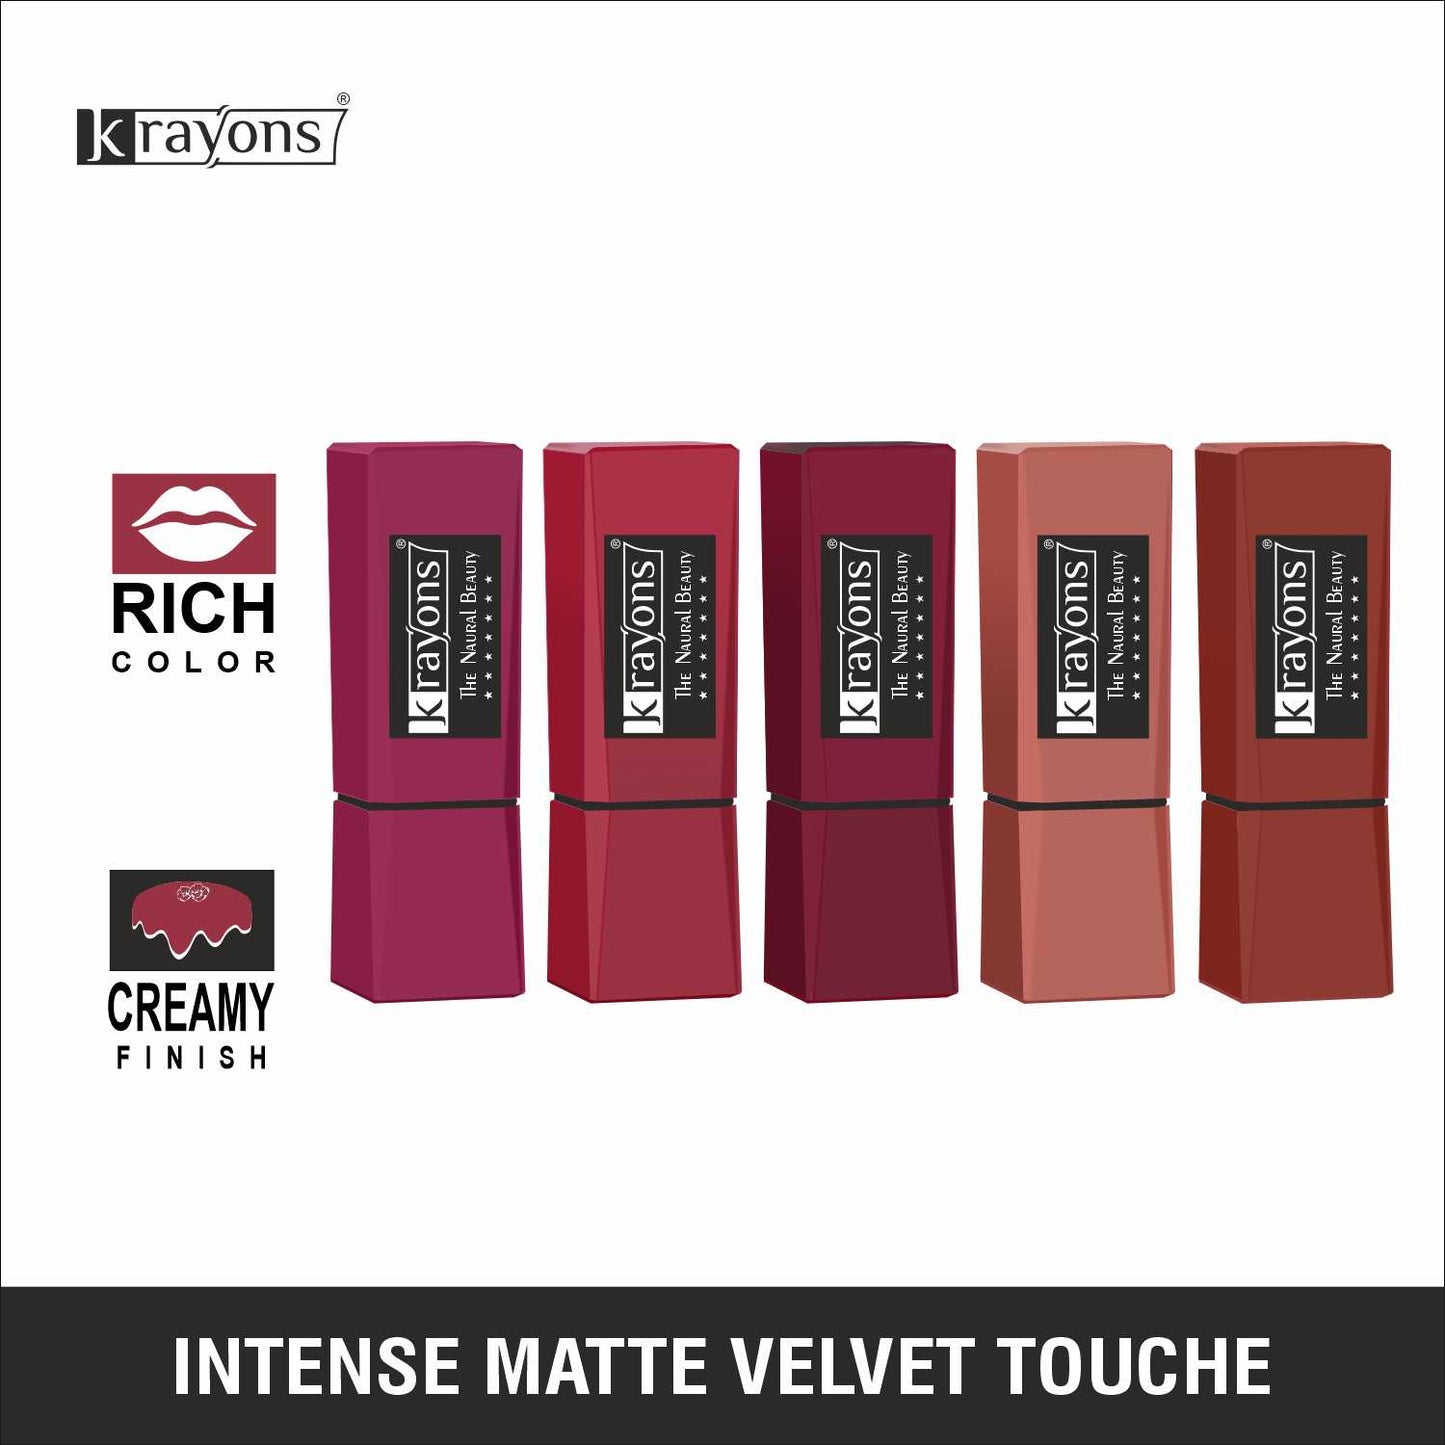 Krayons Intense Matte Lipstick, Waterproof, Longlasting, Multicolor, 3.5gm Each (Pack of 5)